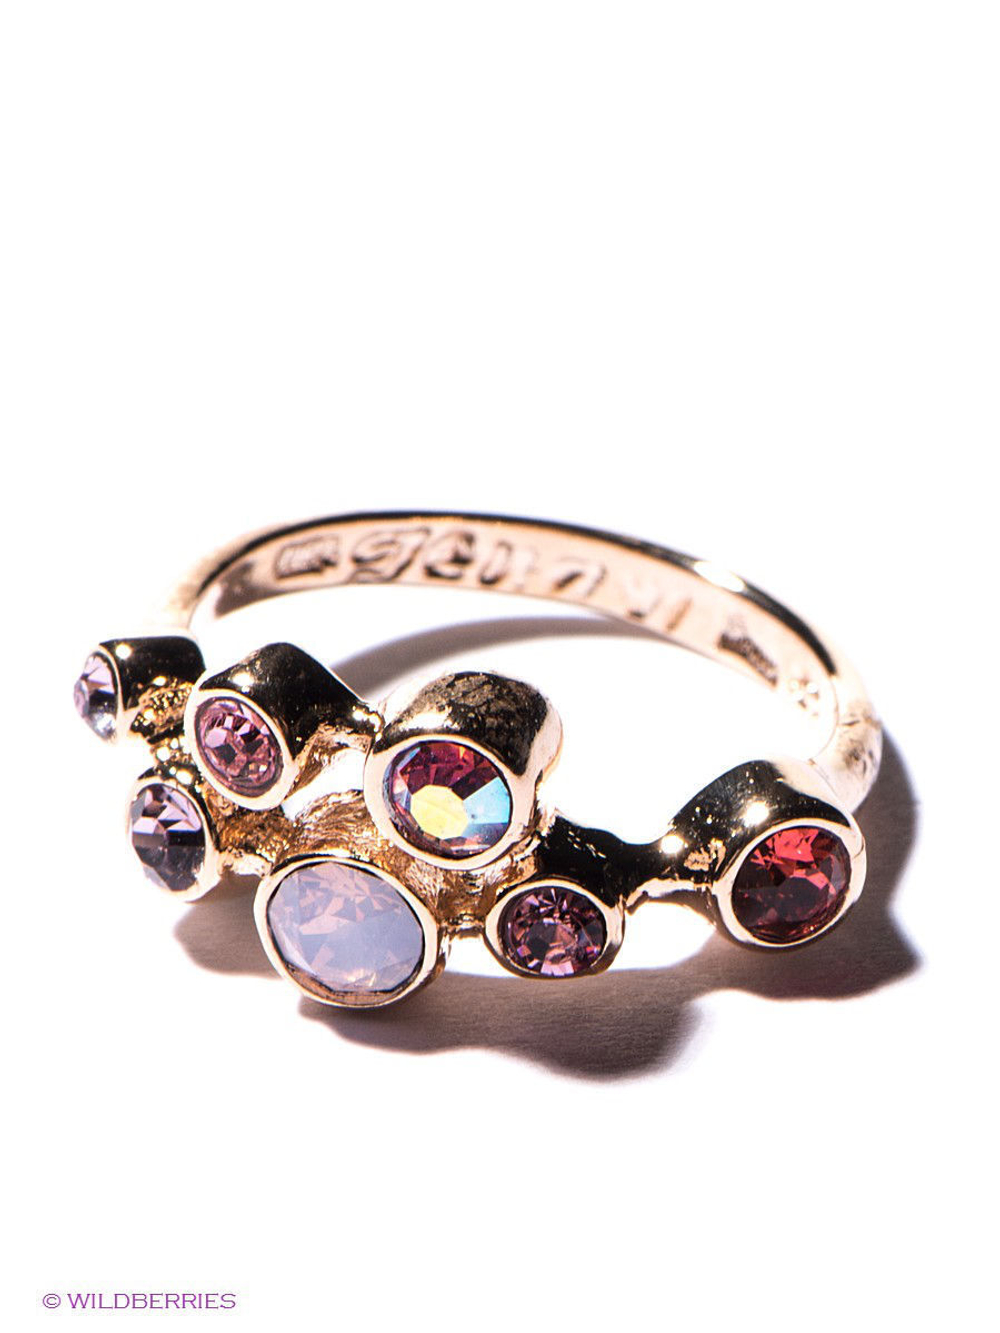 "Меренга" кольцо в золотом покрытии из коллекции "Десерт" от Jenavi